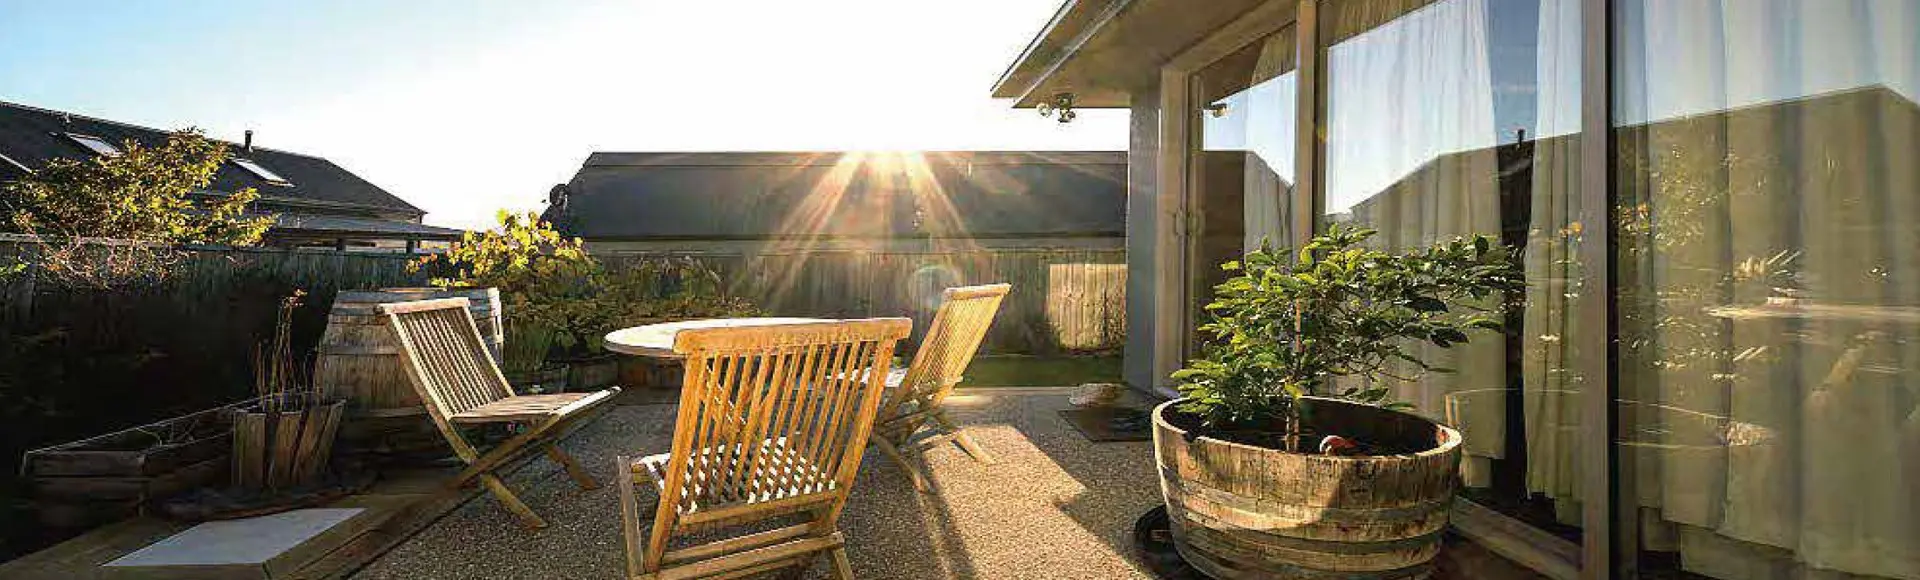 solar flood lights outdoor in your garden